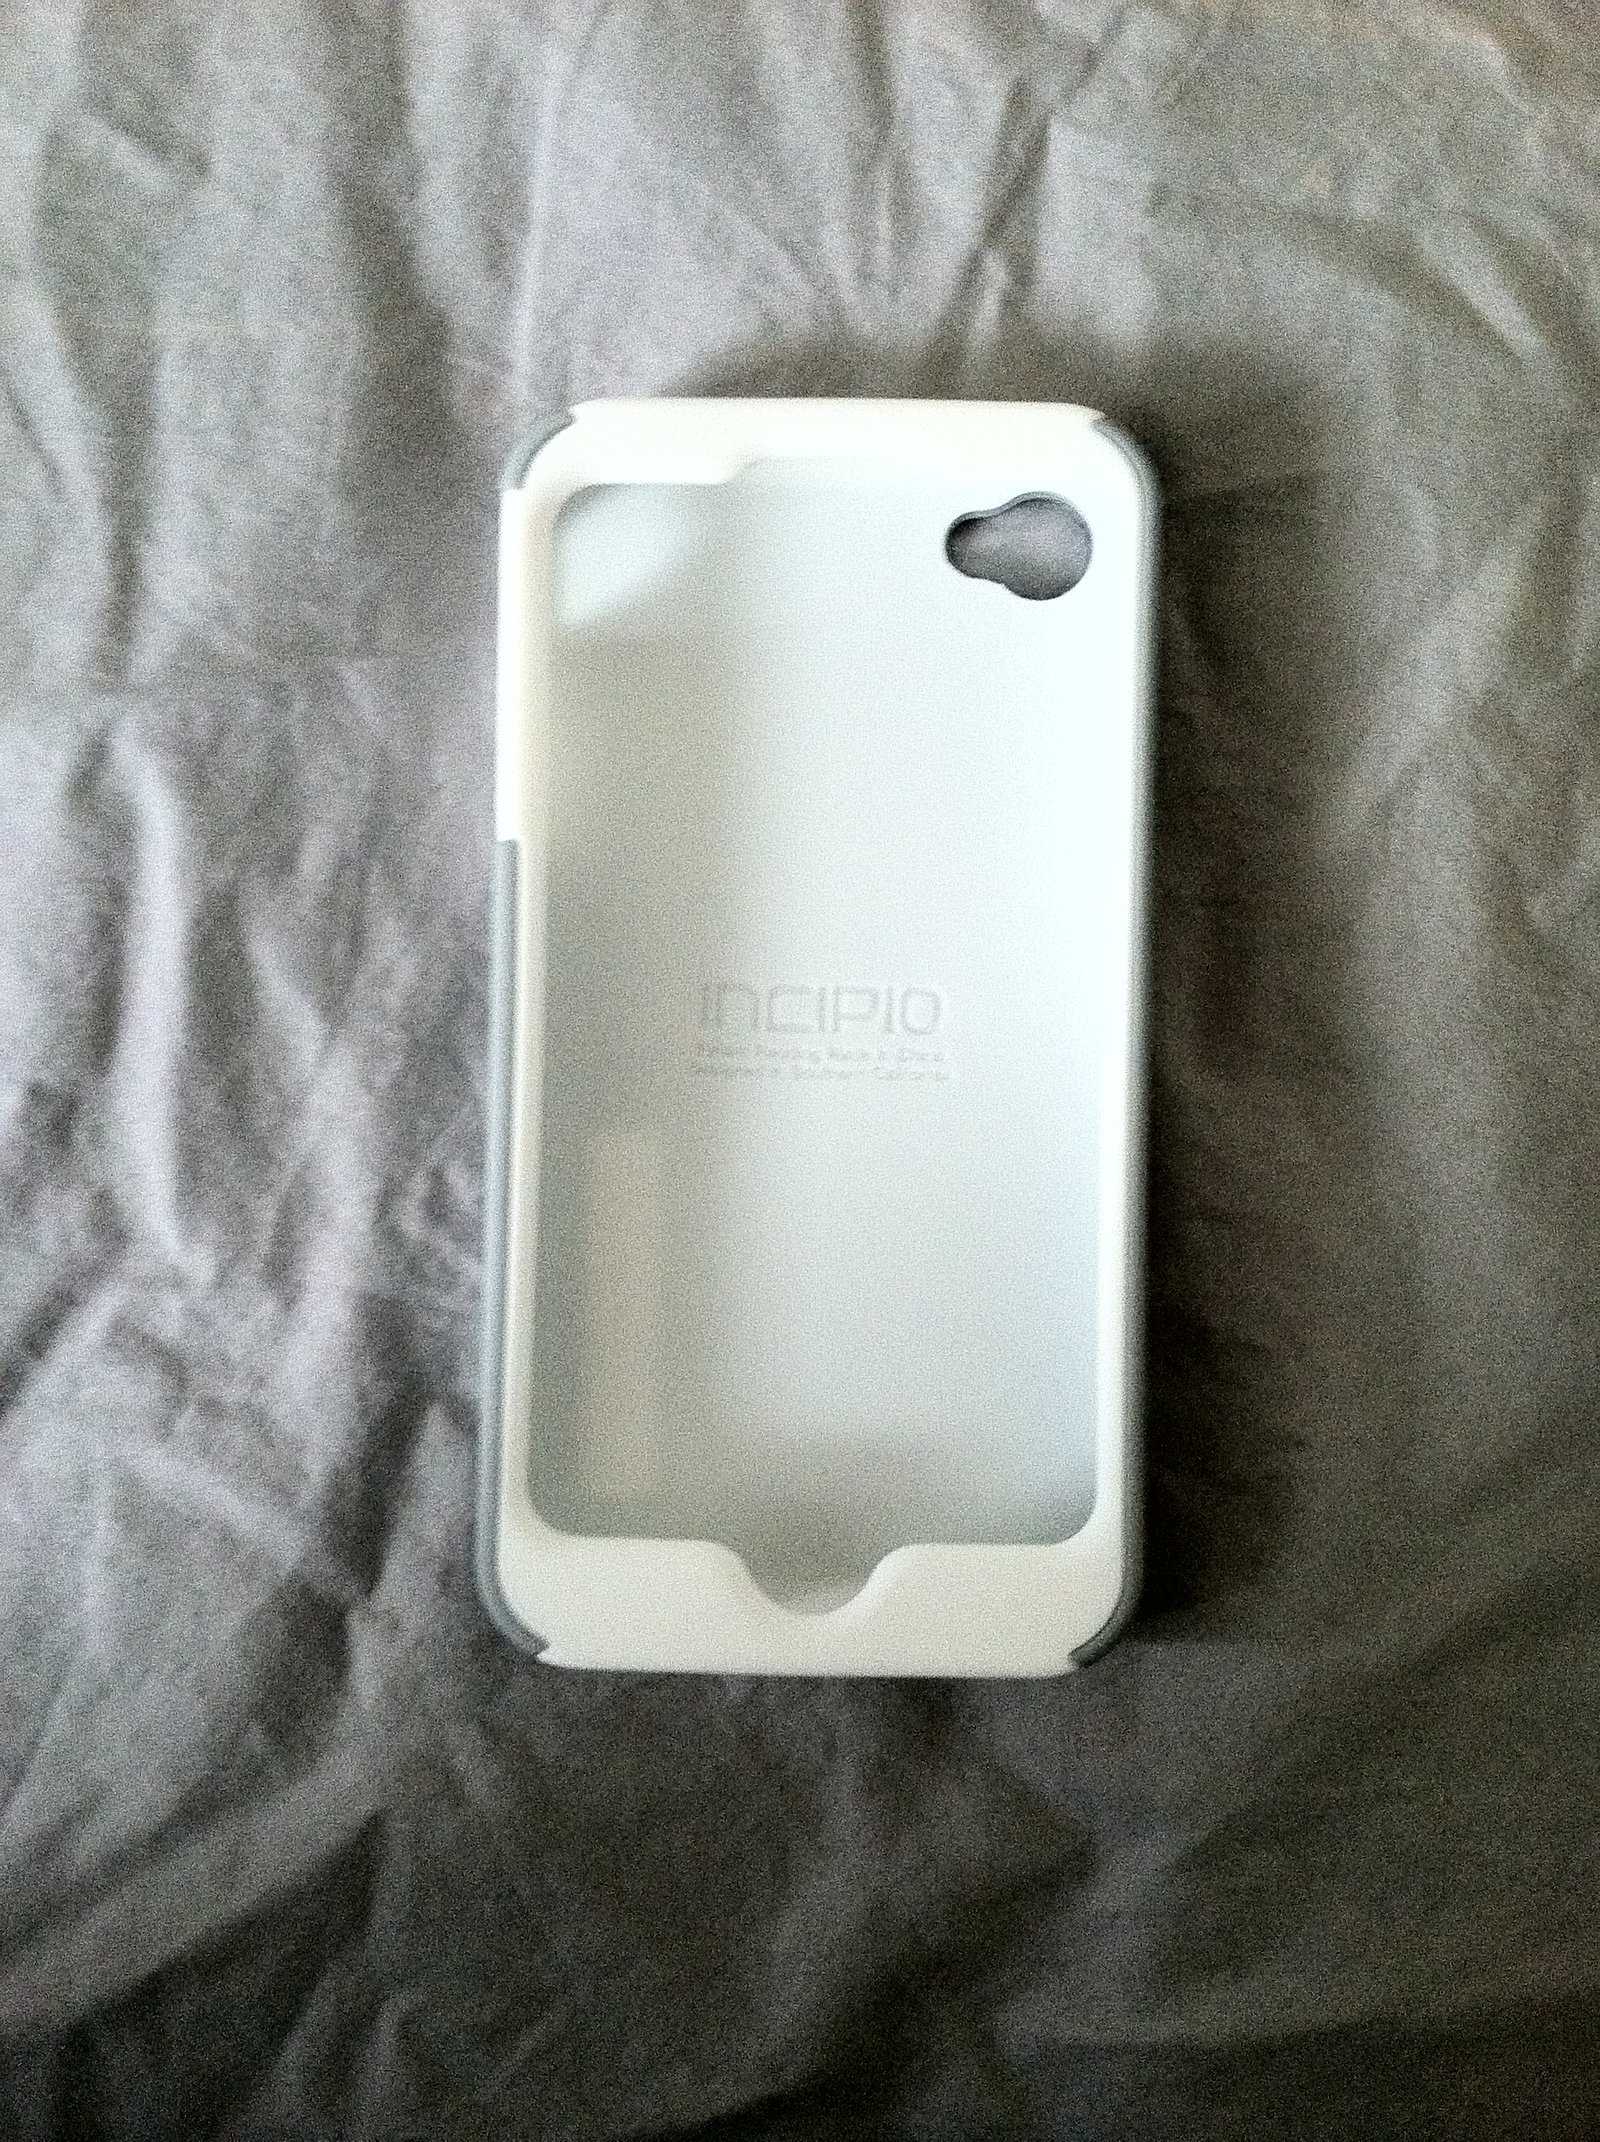 Incipio iphone 4 case